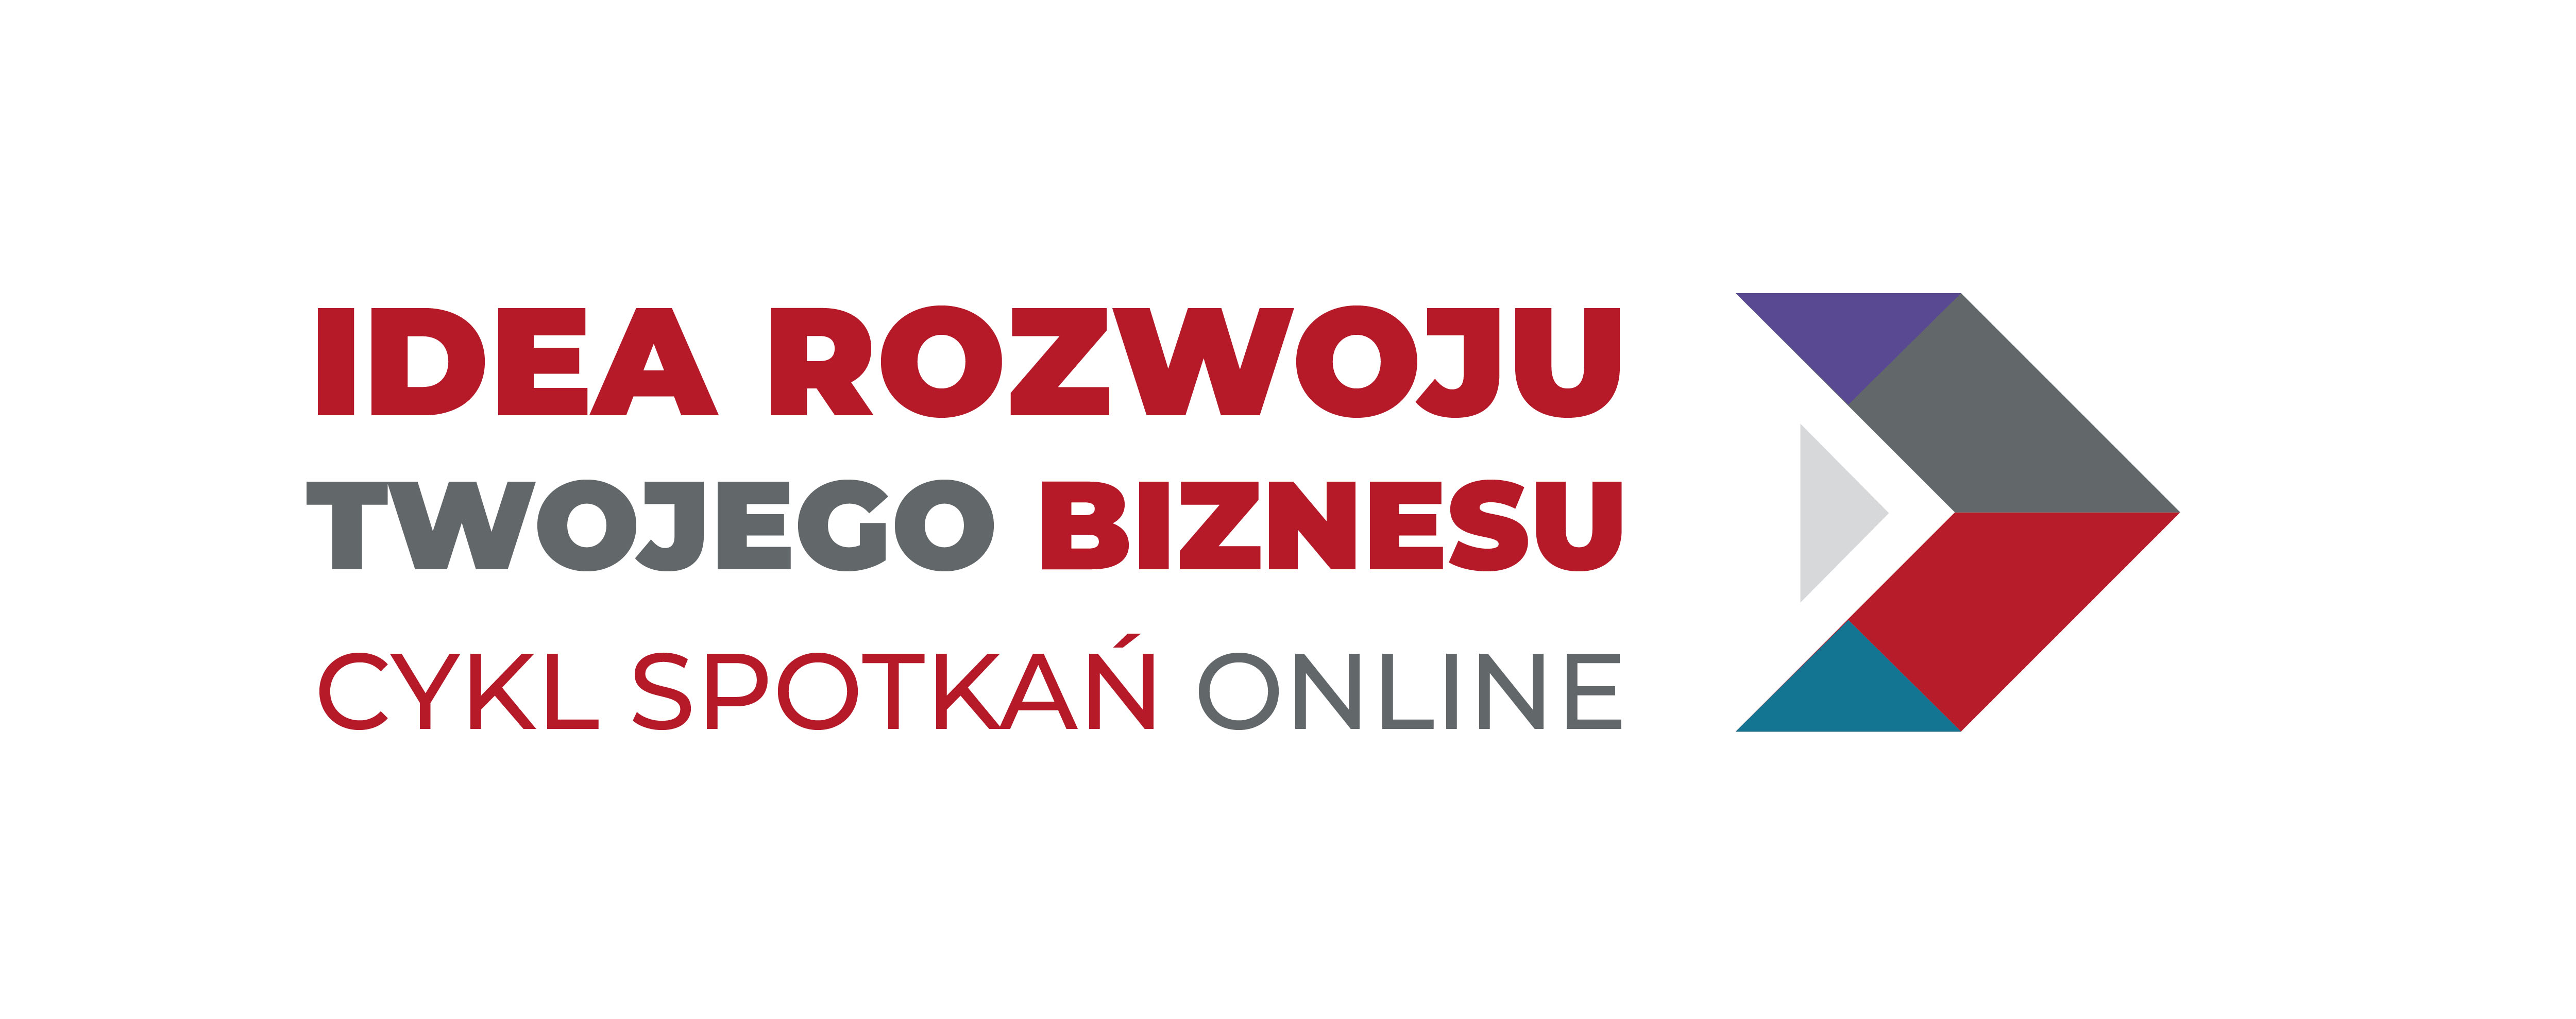 Logotyp #idearozwojubiznesu – cykl spotkań online